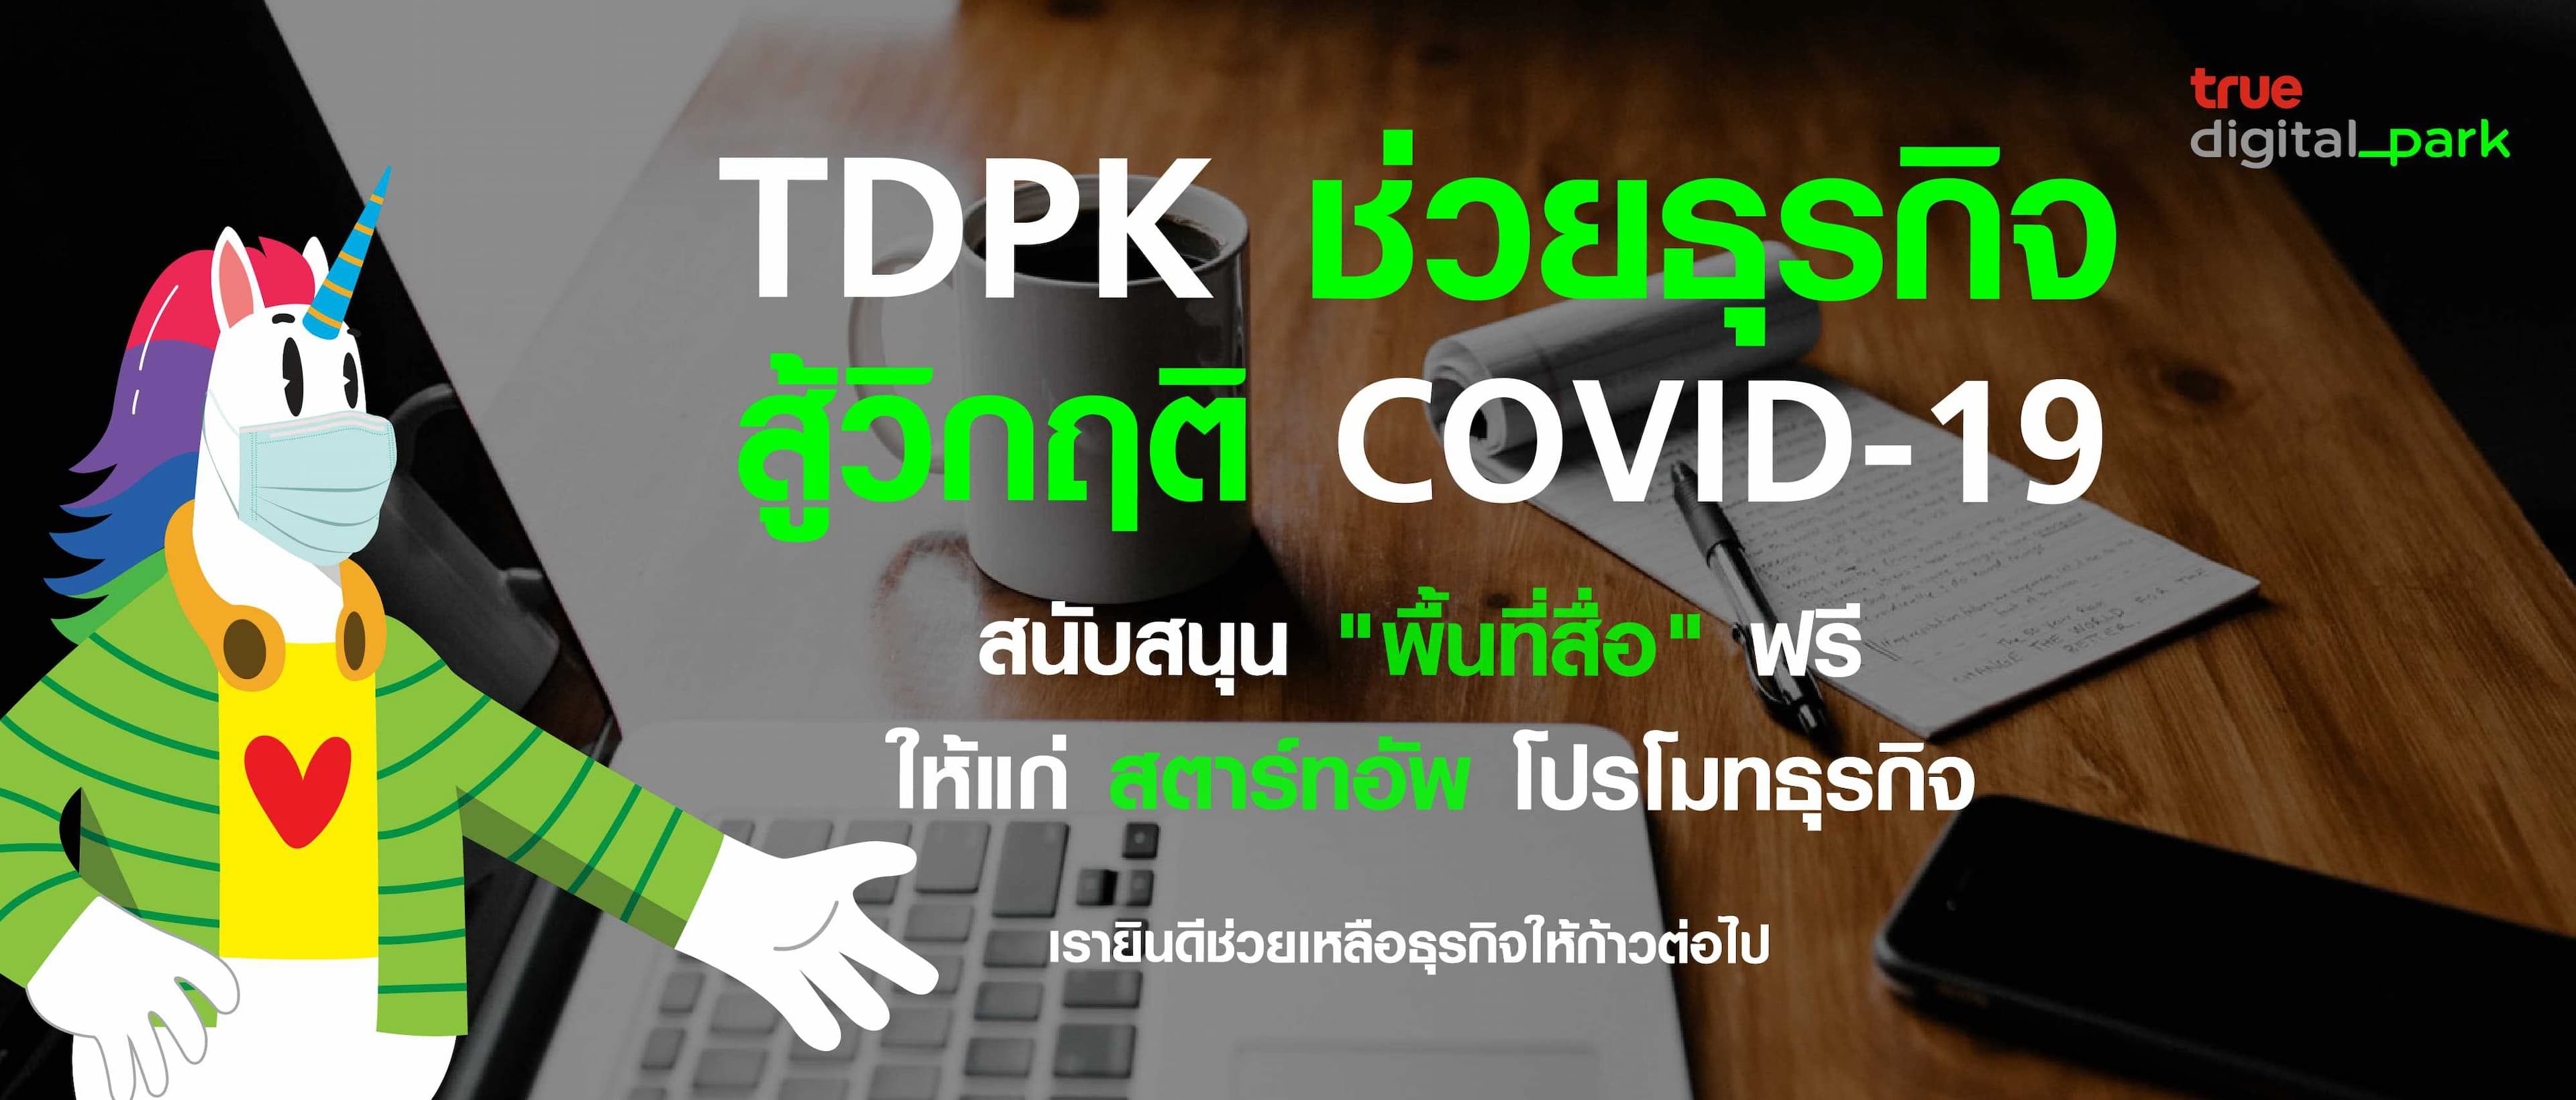 TDPK ช่วยธุรกิจ สู้วิกฤติ โควิด 19